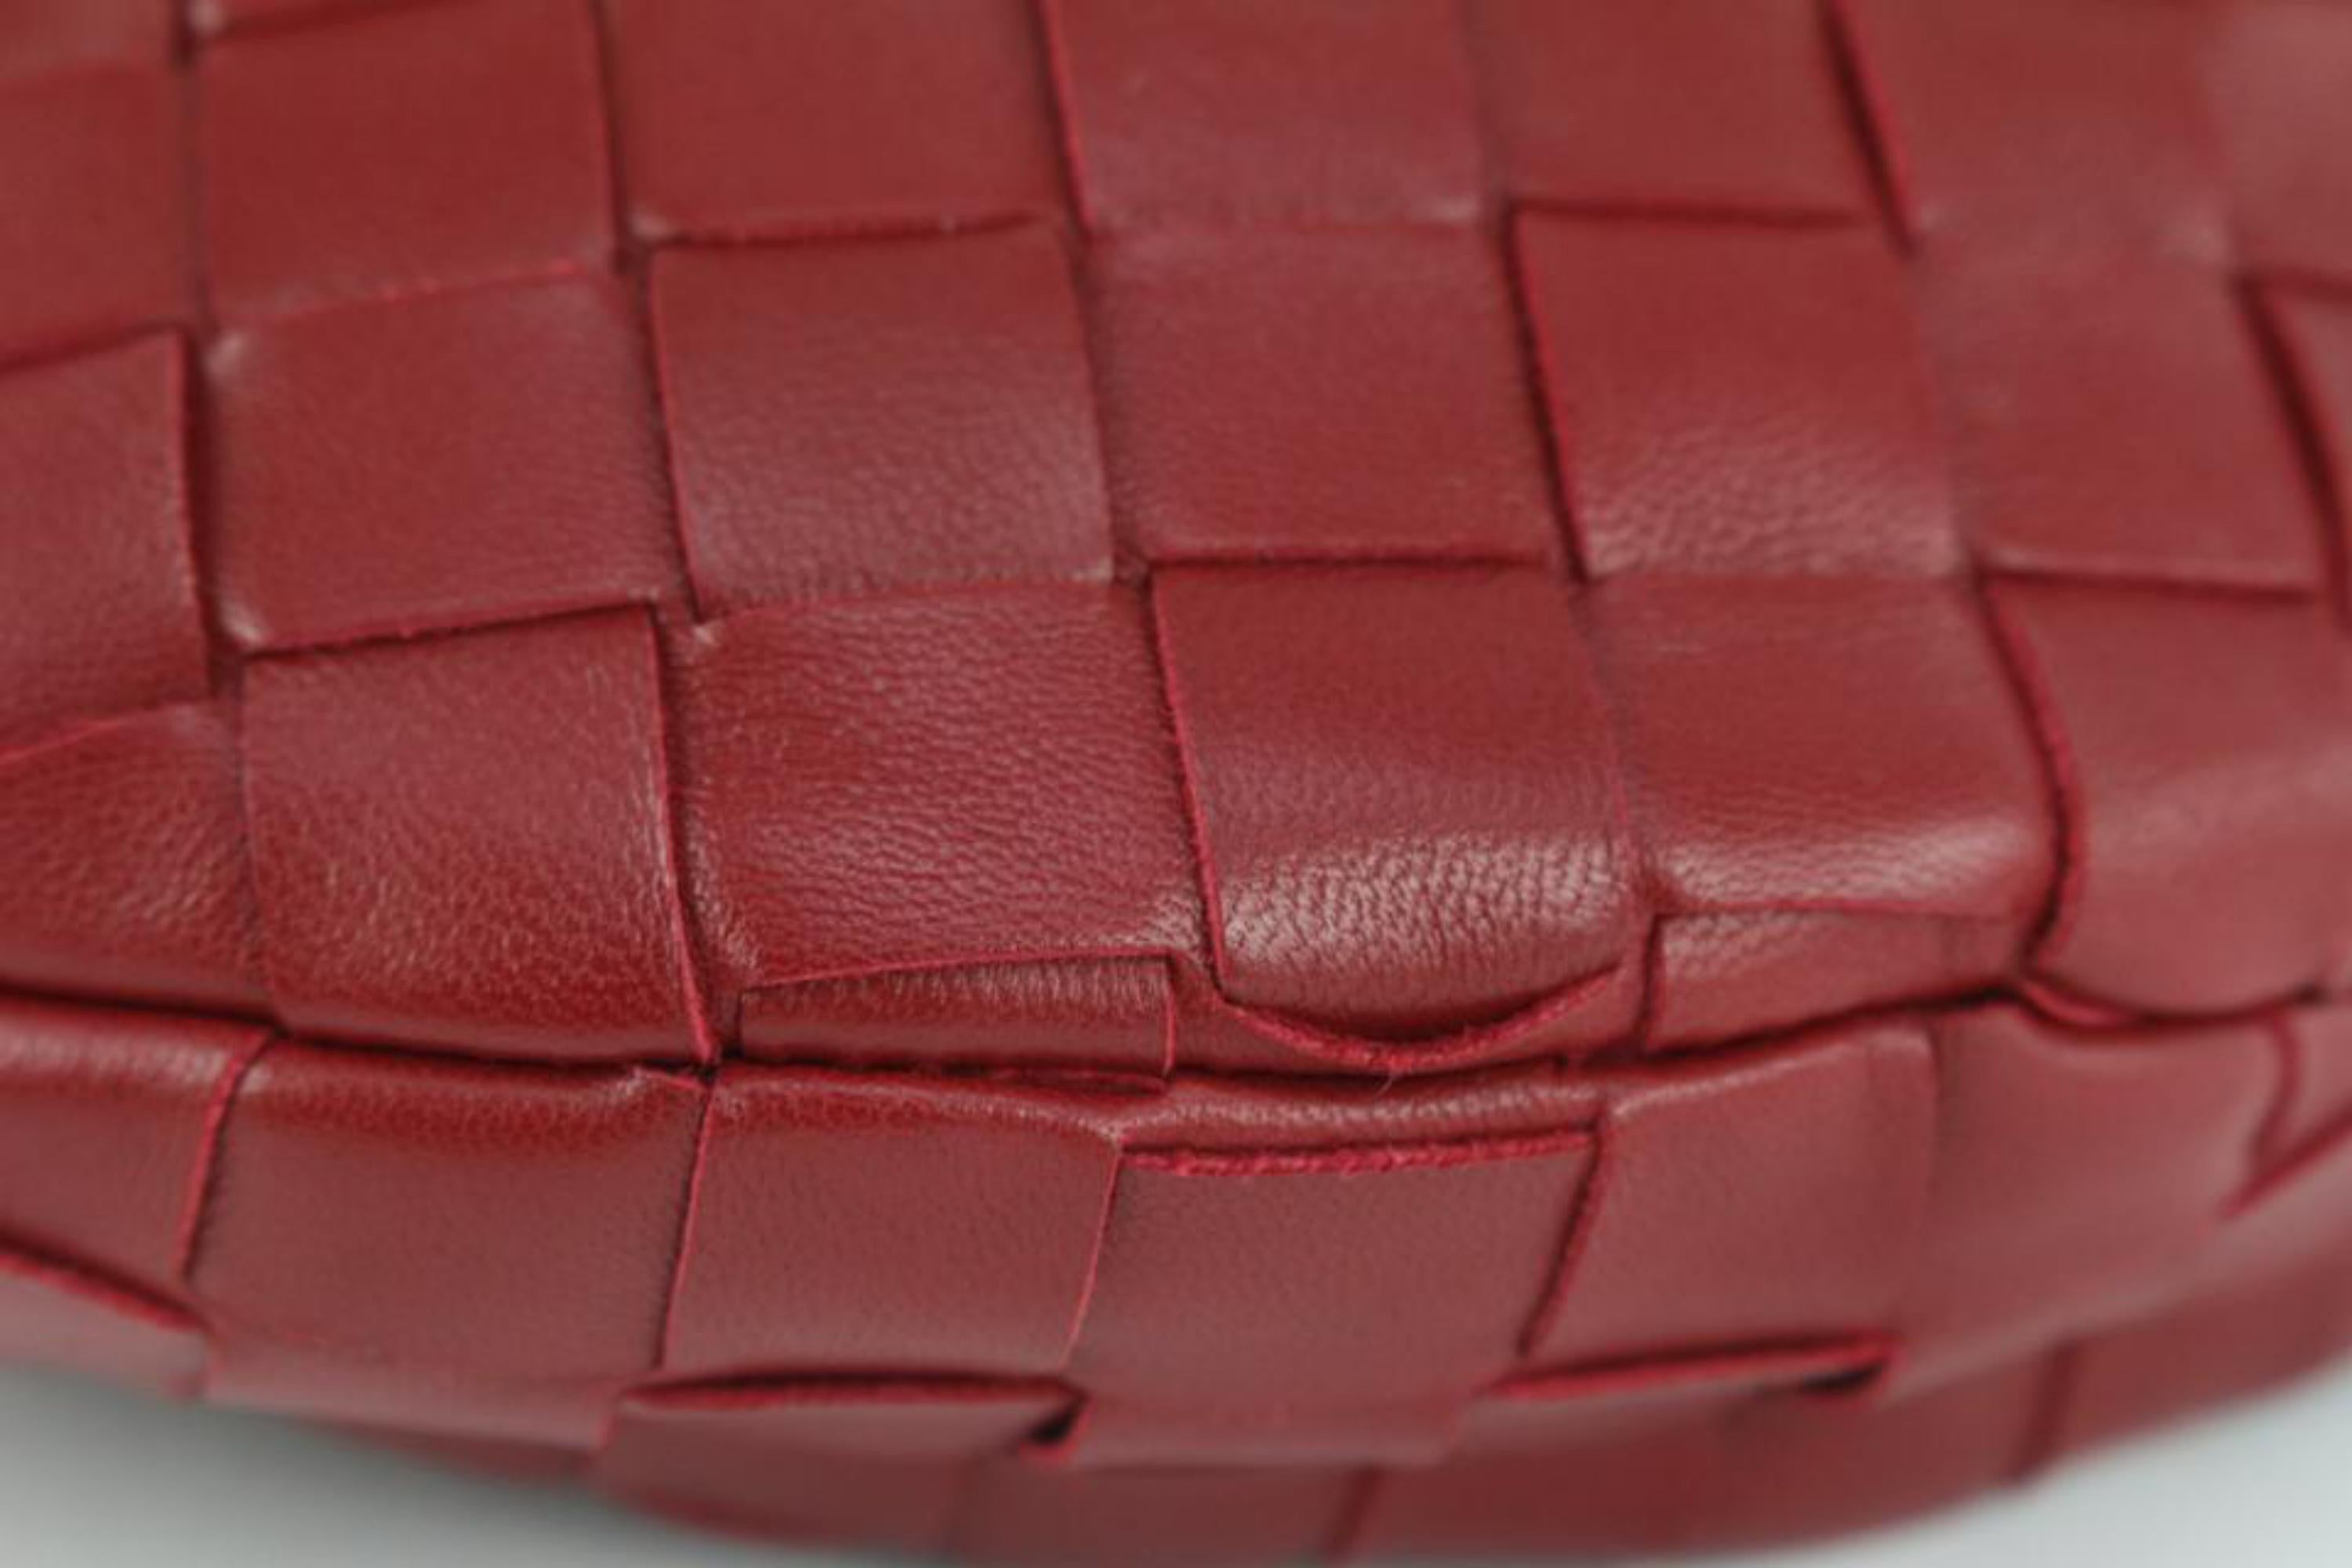 Bottega Veneta Red Intrecciato Leather The Mini Jodie Hobo Bag 1123bv36 4